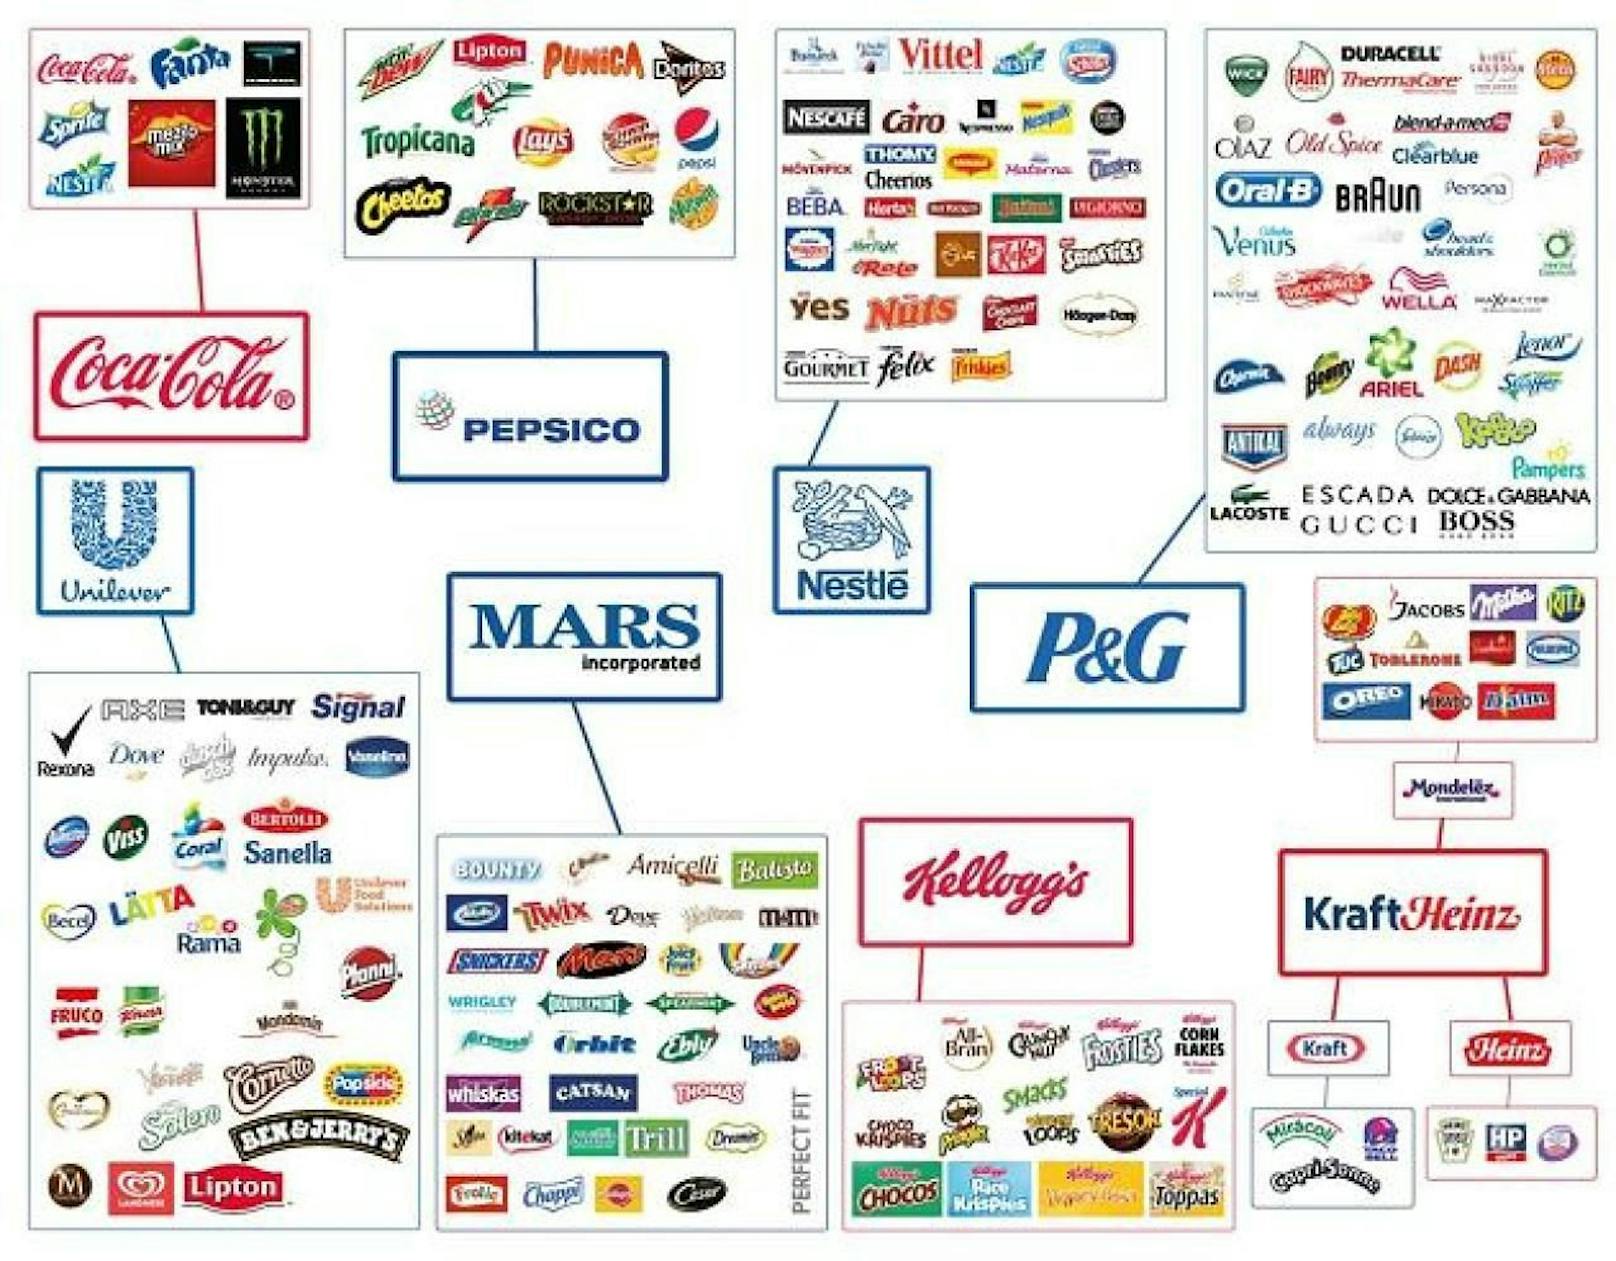 Die Grafik von Finanzen 100 zeigt die acht Firmen, die unsere Supermärkte dominieren.